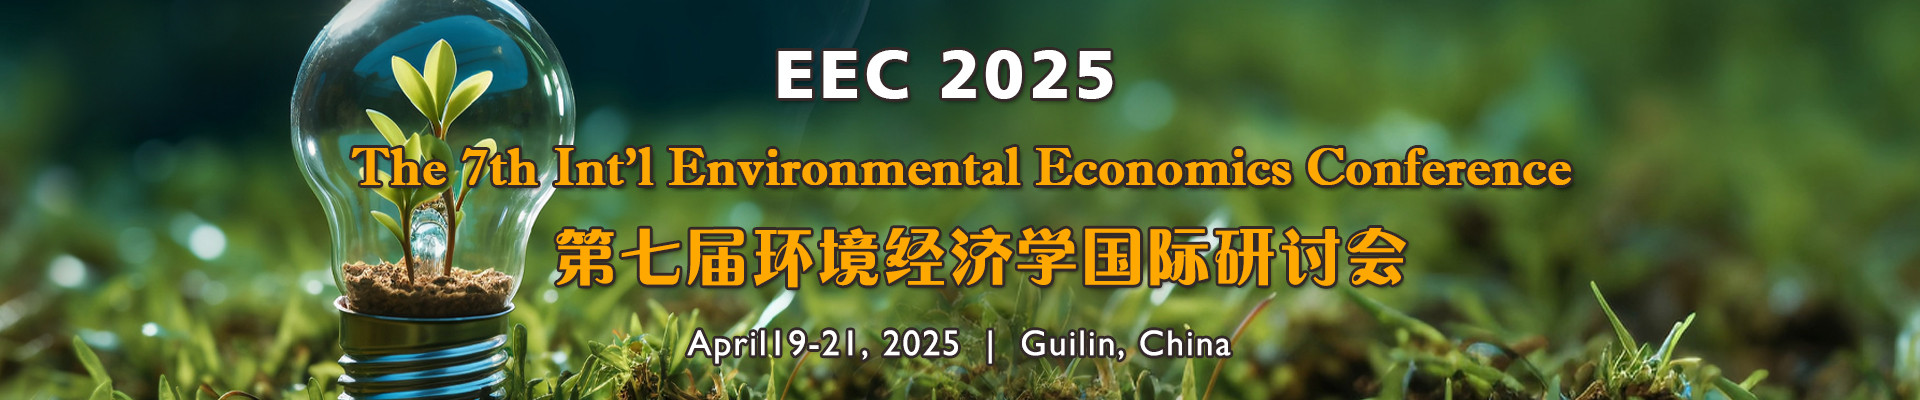 第七届环境经济学国际研讨会(EEC 2025)